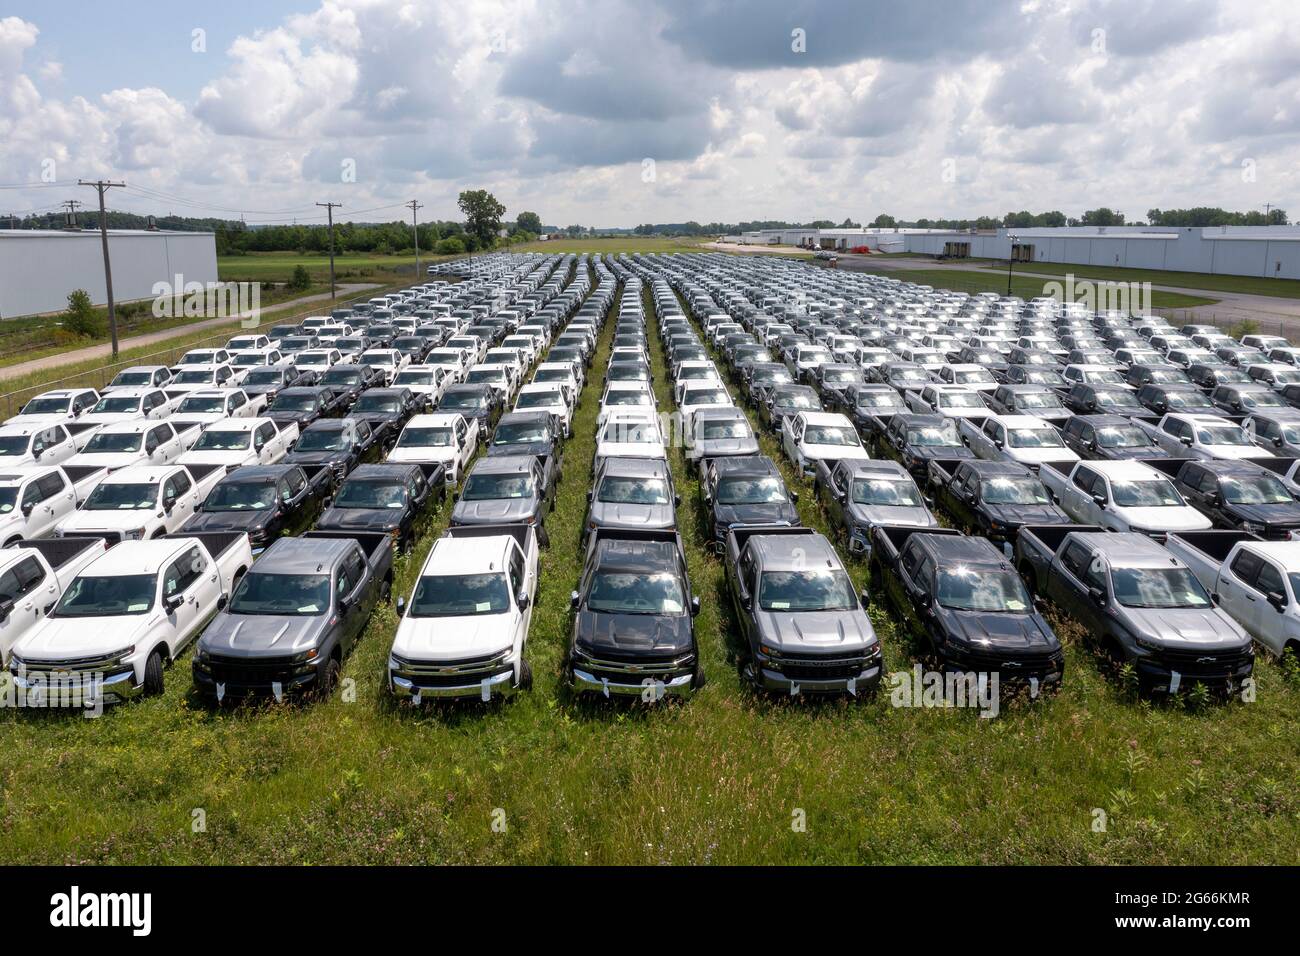 Fort Wayne, Indiana - Neue GMC- und Chevrolet-Pickup-Trucks sind abgestellt und können aufgrund des weltweiten Mangels an Halbleiterchips nicht verkauft werden. Die tr Stockfoto